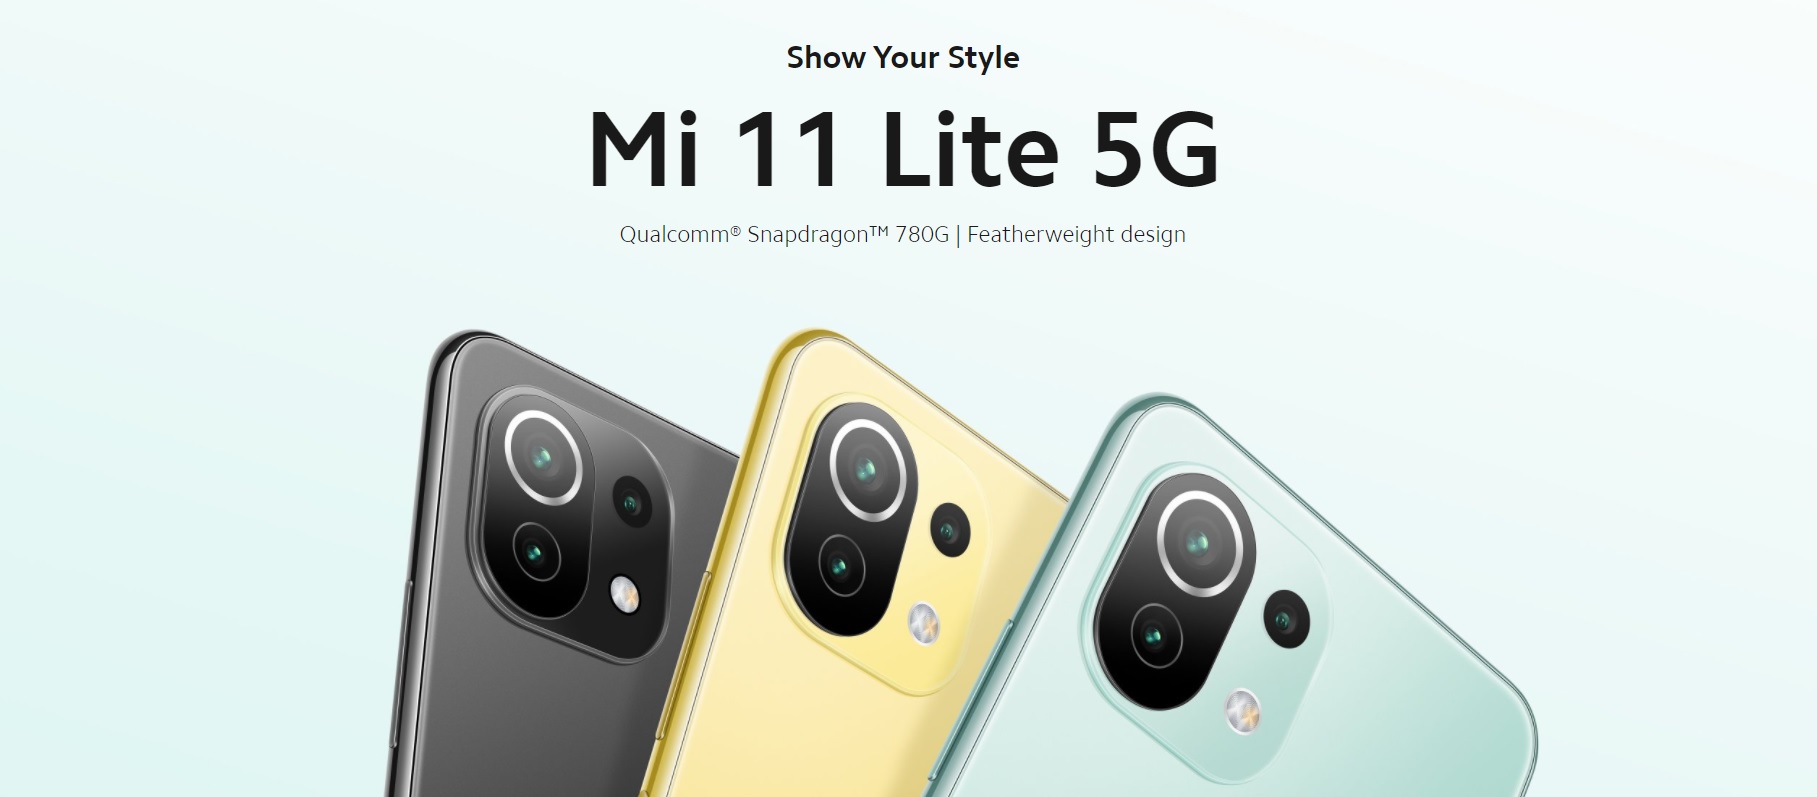 Mi 11 Lite 5G Price in Nepal